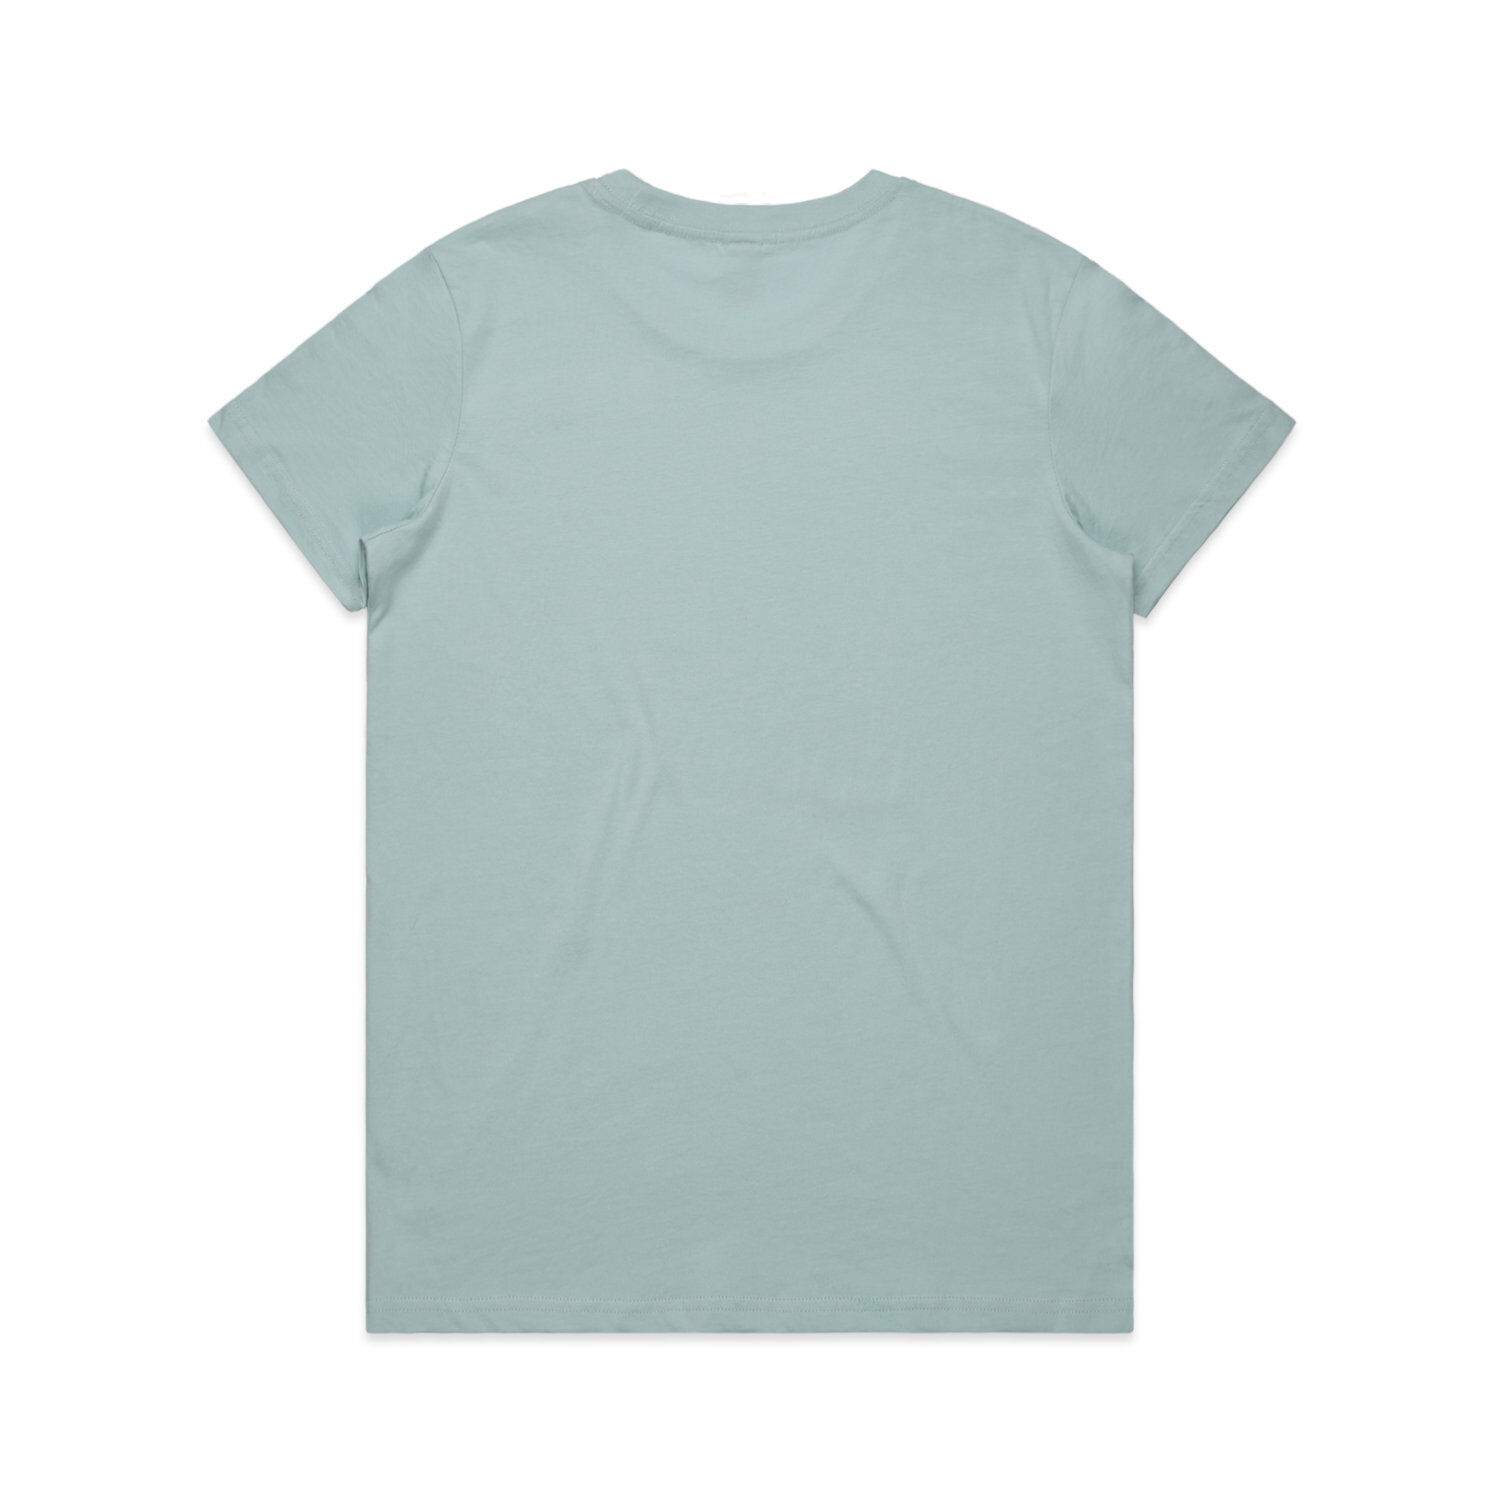 AS Colour Women's Maple T-Shirt (pale blue, back view)